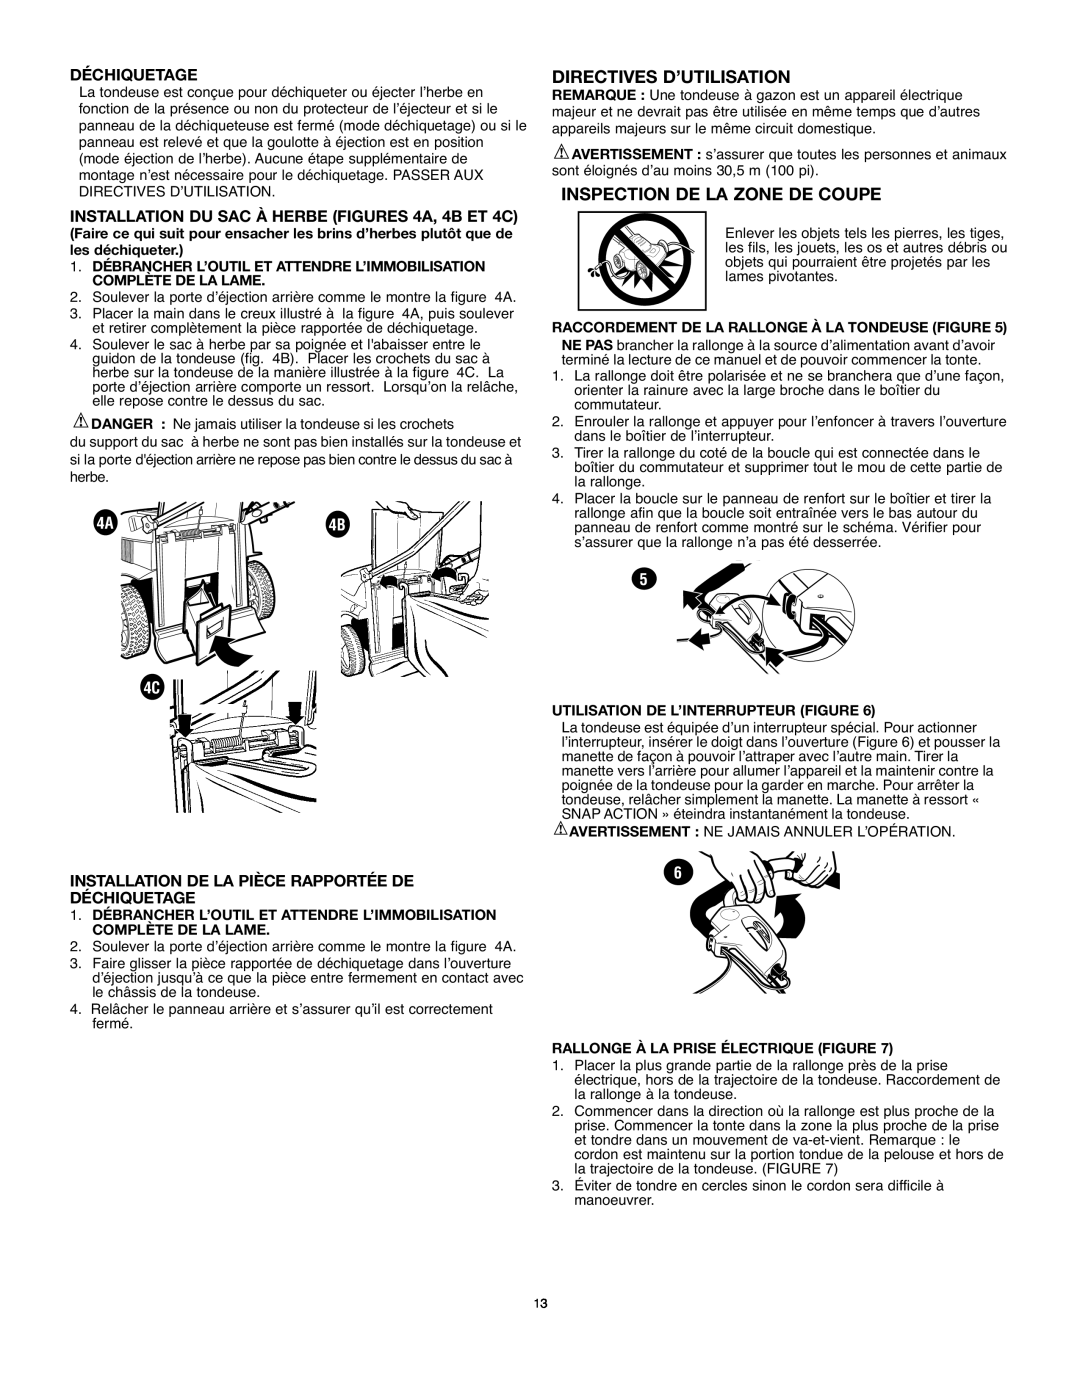 Black & Decker MM875 instruction manual Directives D’Utilisation, Inspection De La Zone De Coupe, Déchiquetage 